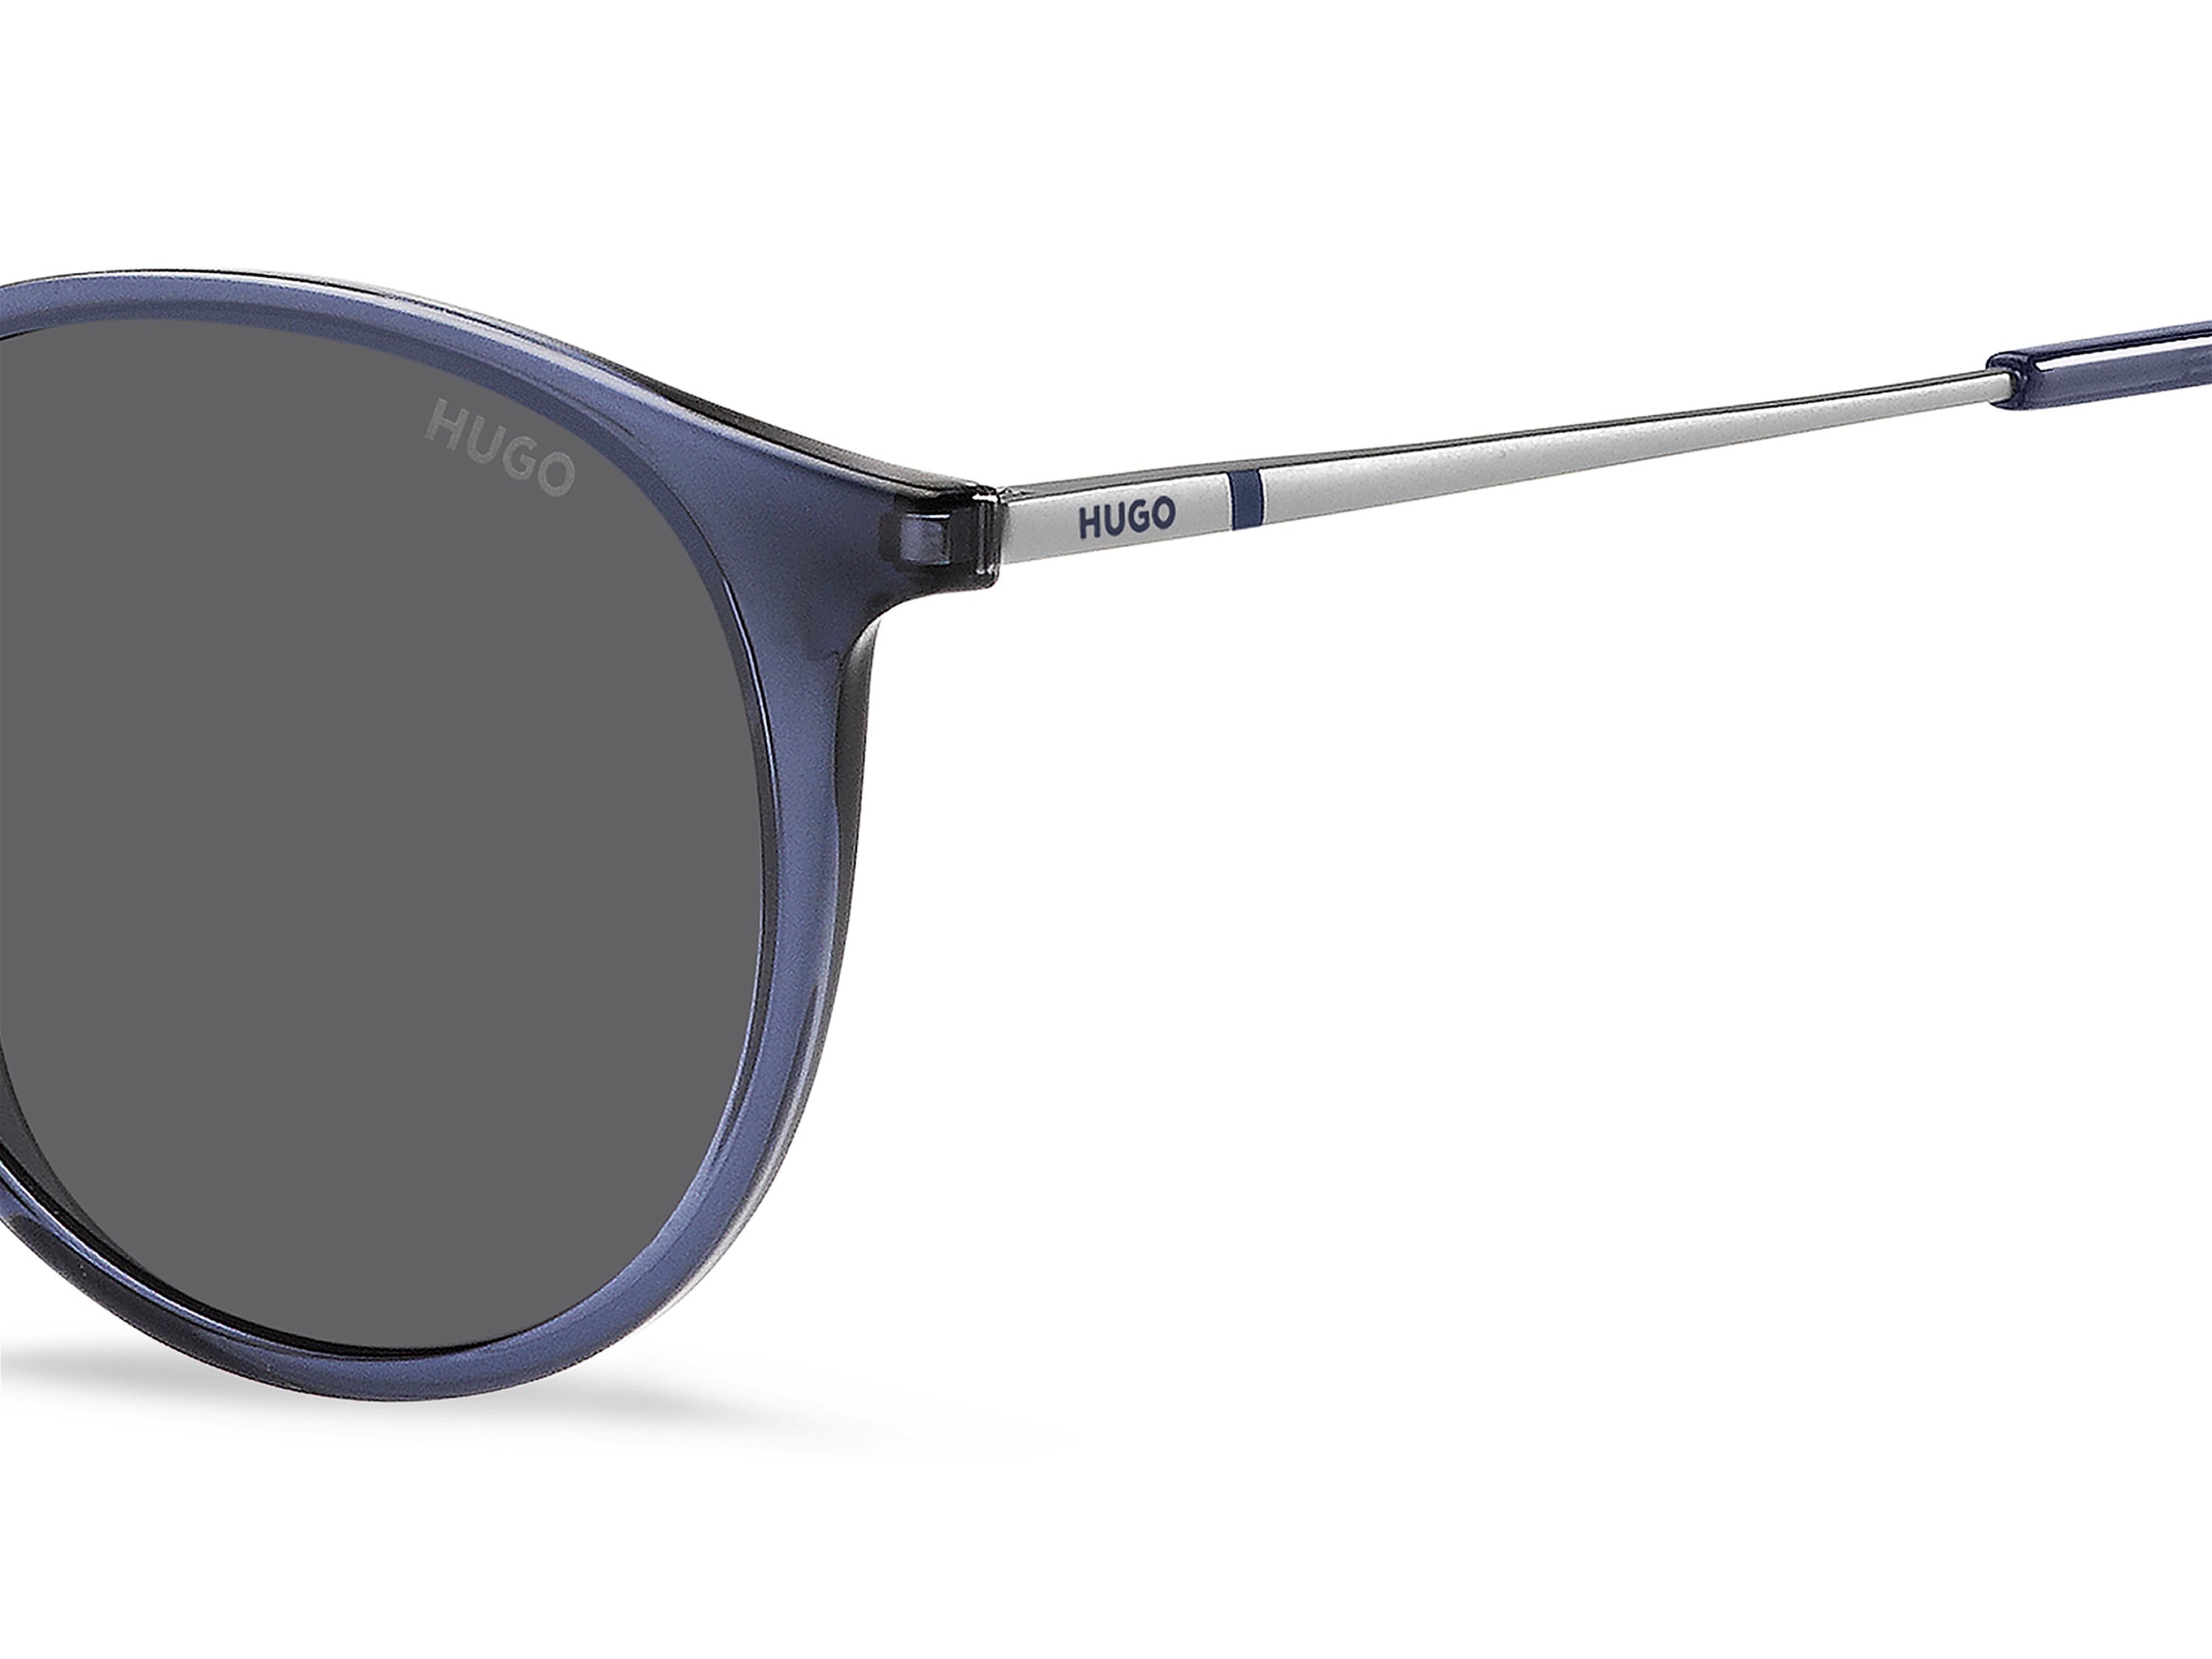 Das Bild zeigt die Sonnenbrille HG1286/S B88 von der Marke Hugo in blau/silber.